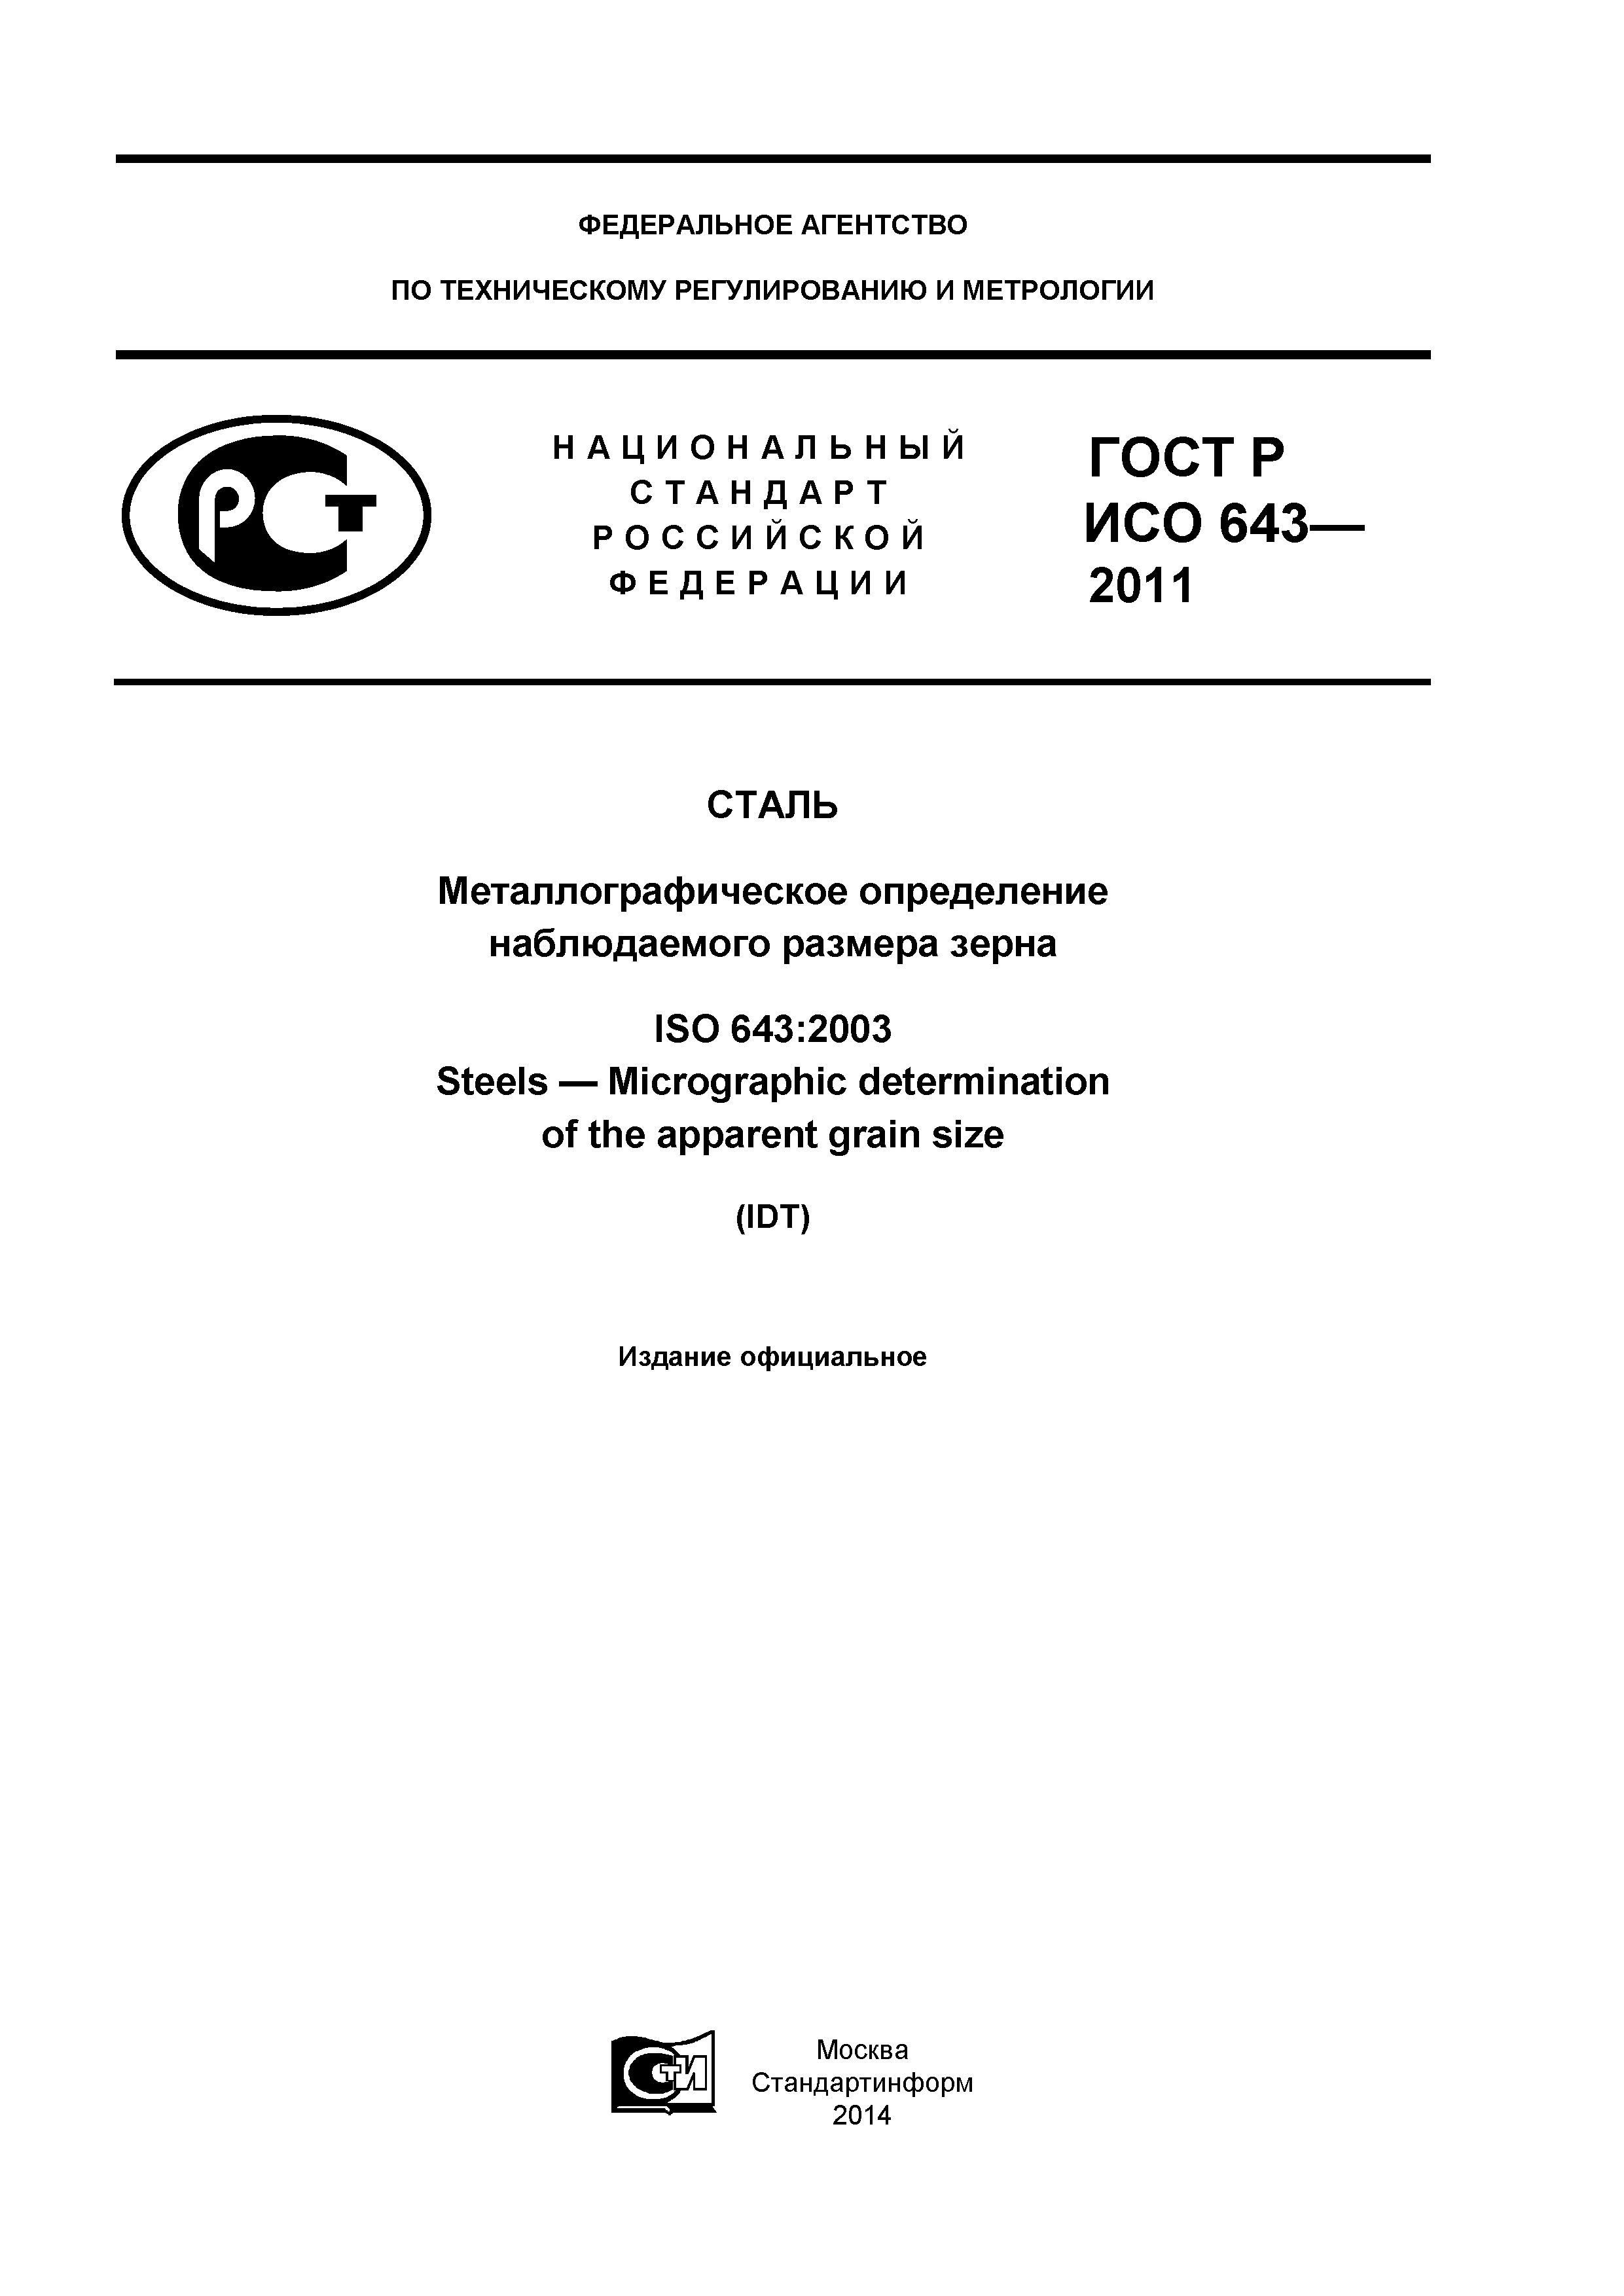 ГОСТ Р ИСО 643-2011